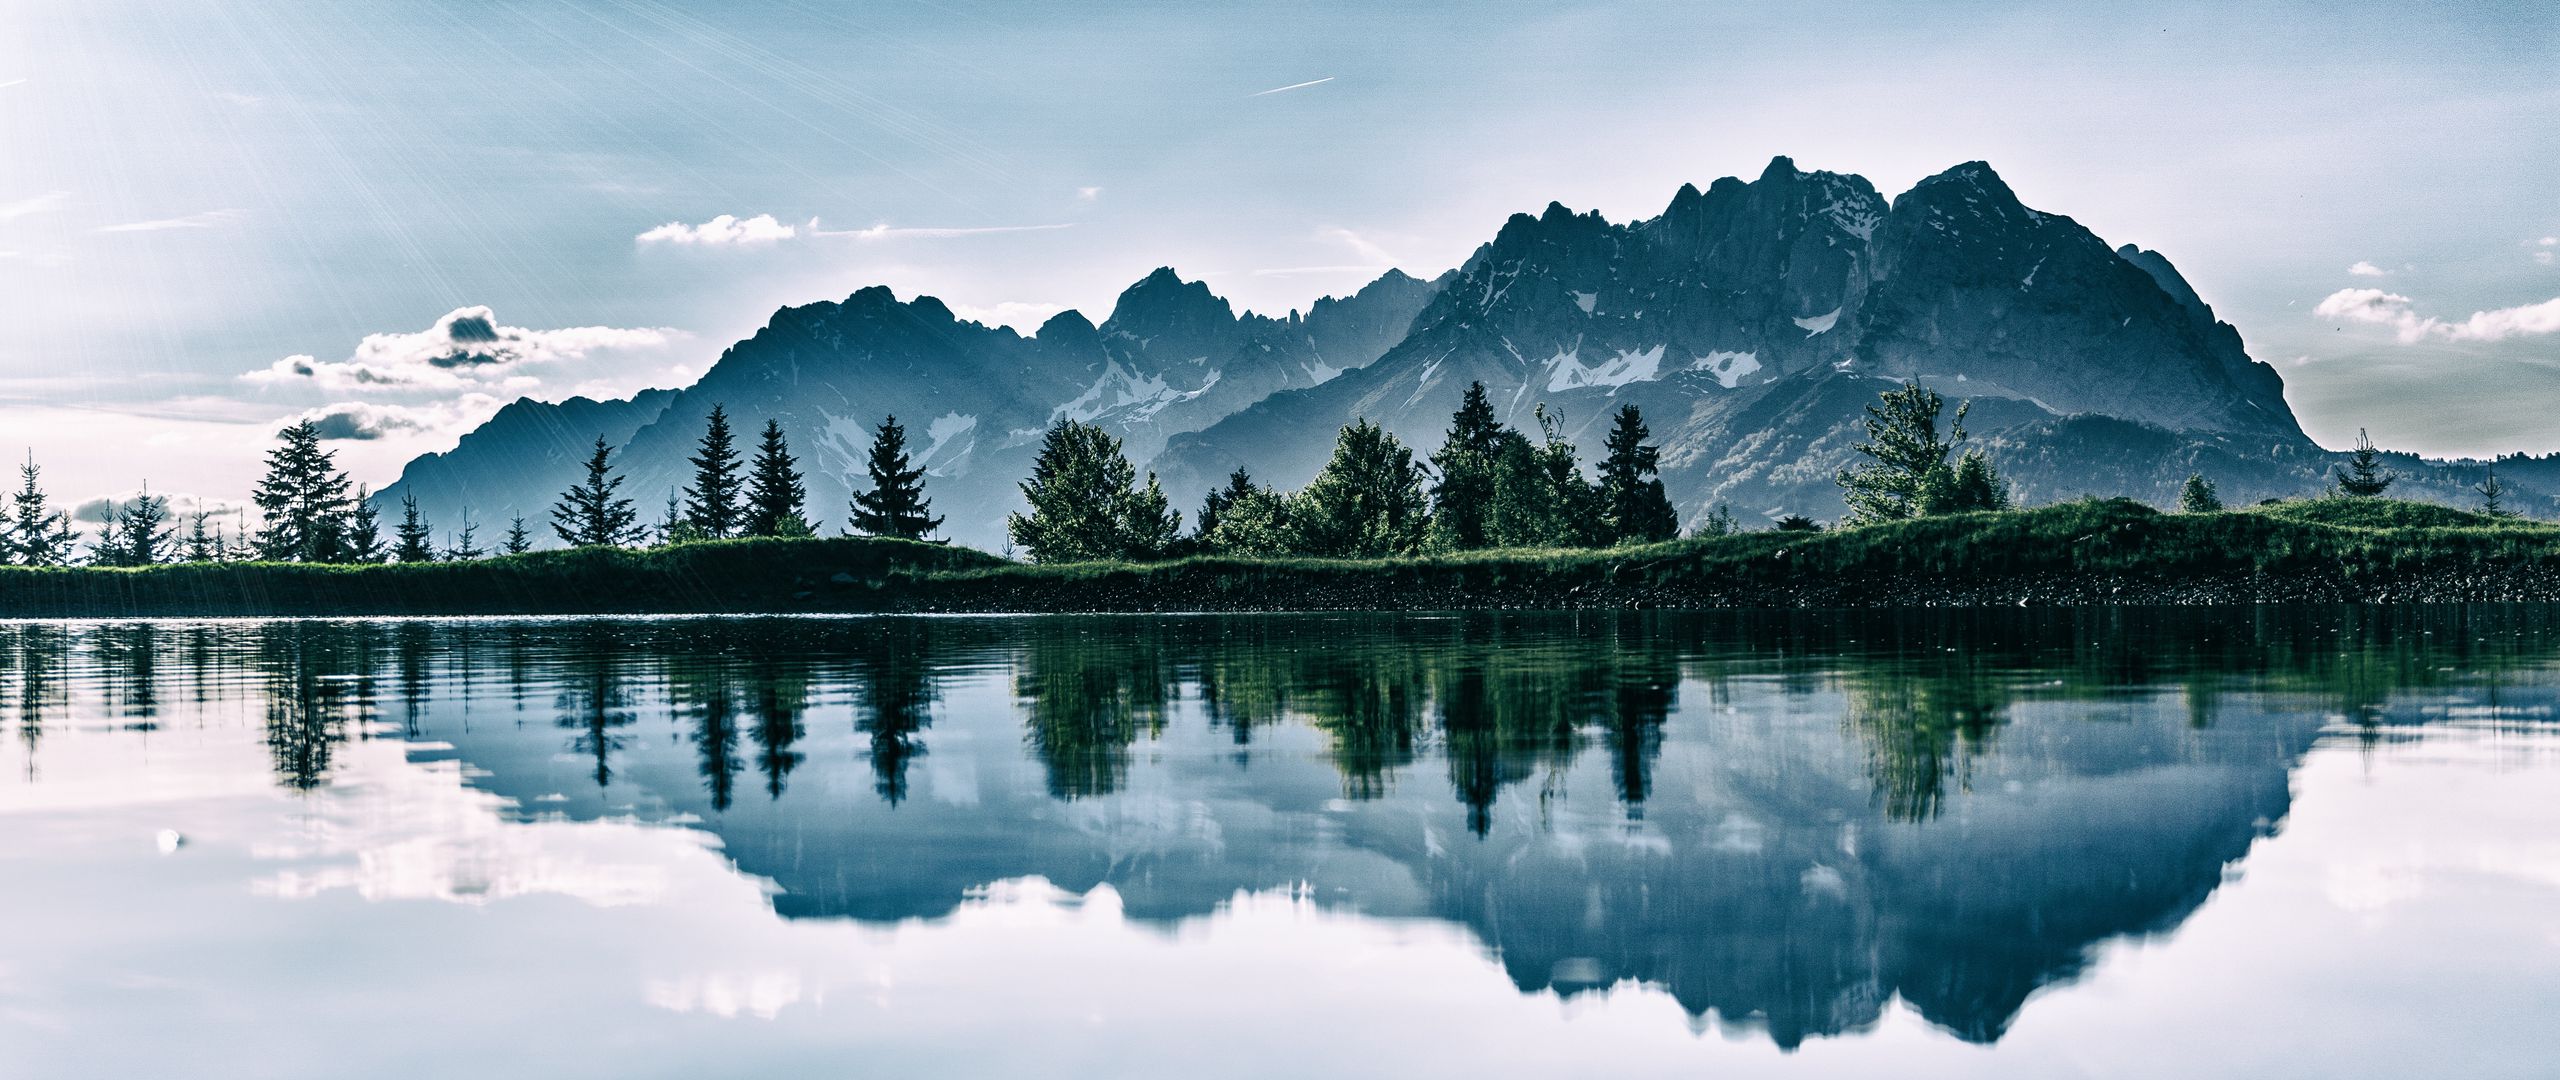 2560x1080 горы, озеро, фотошоп, отражение обои два монитора 1080p.